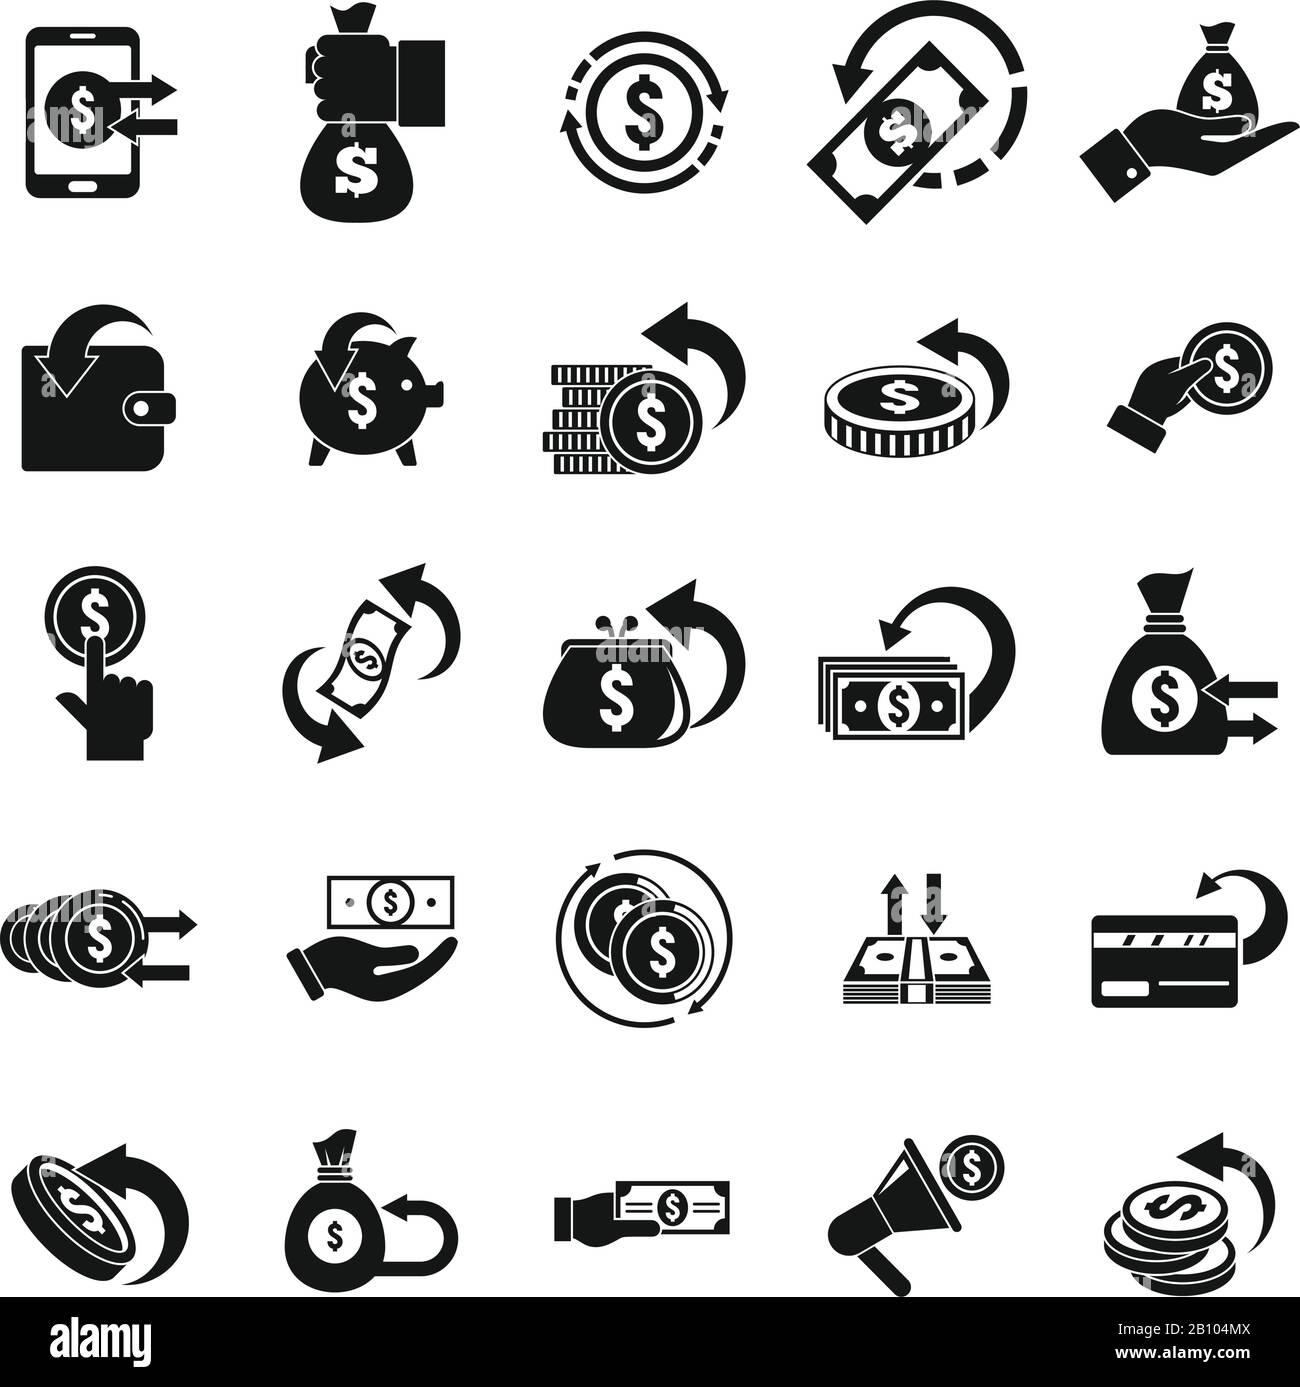 Cashback-Symbole festgelegt. Einfache Reihe von Cashback-Vektorsymbolen für Webdesign auf weißem Hintergrund Stock Vektor